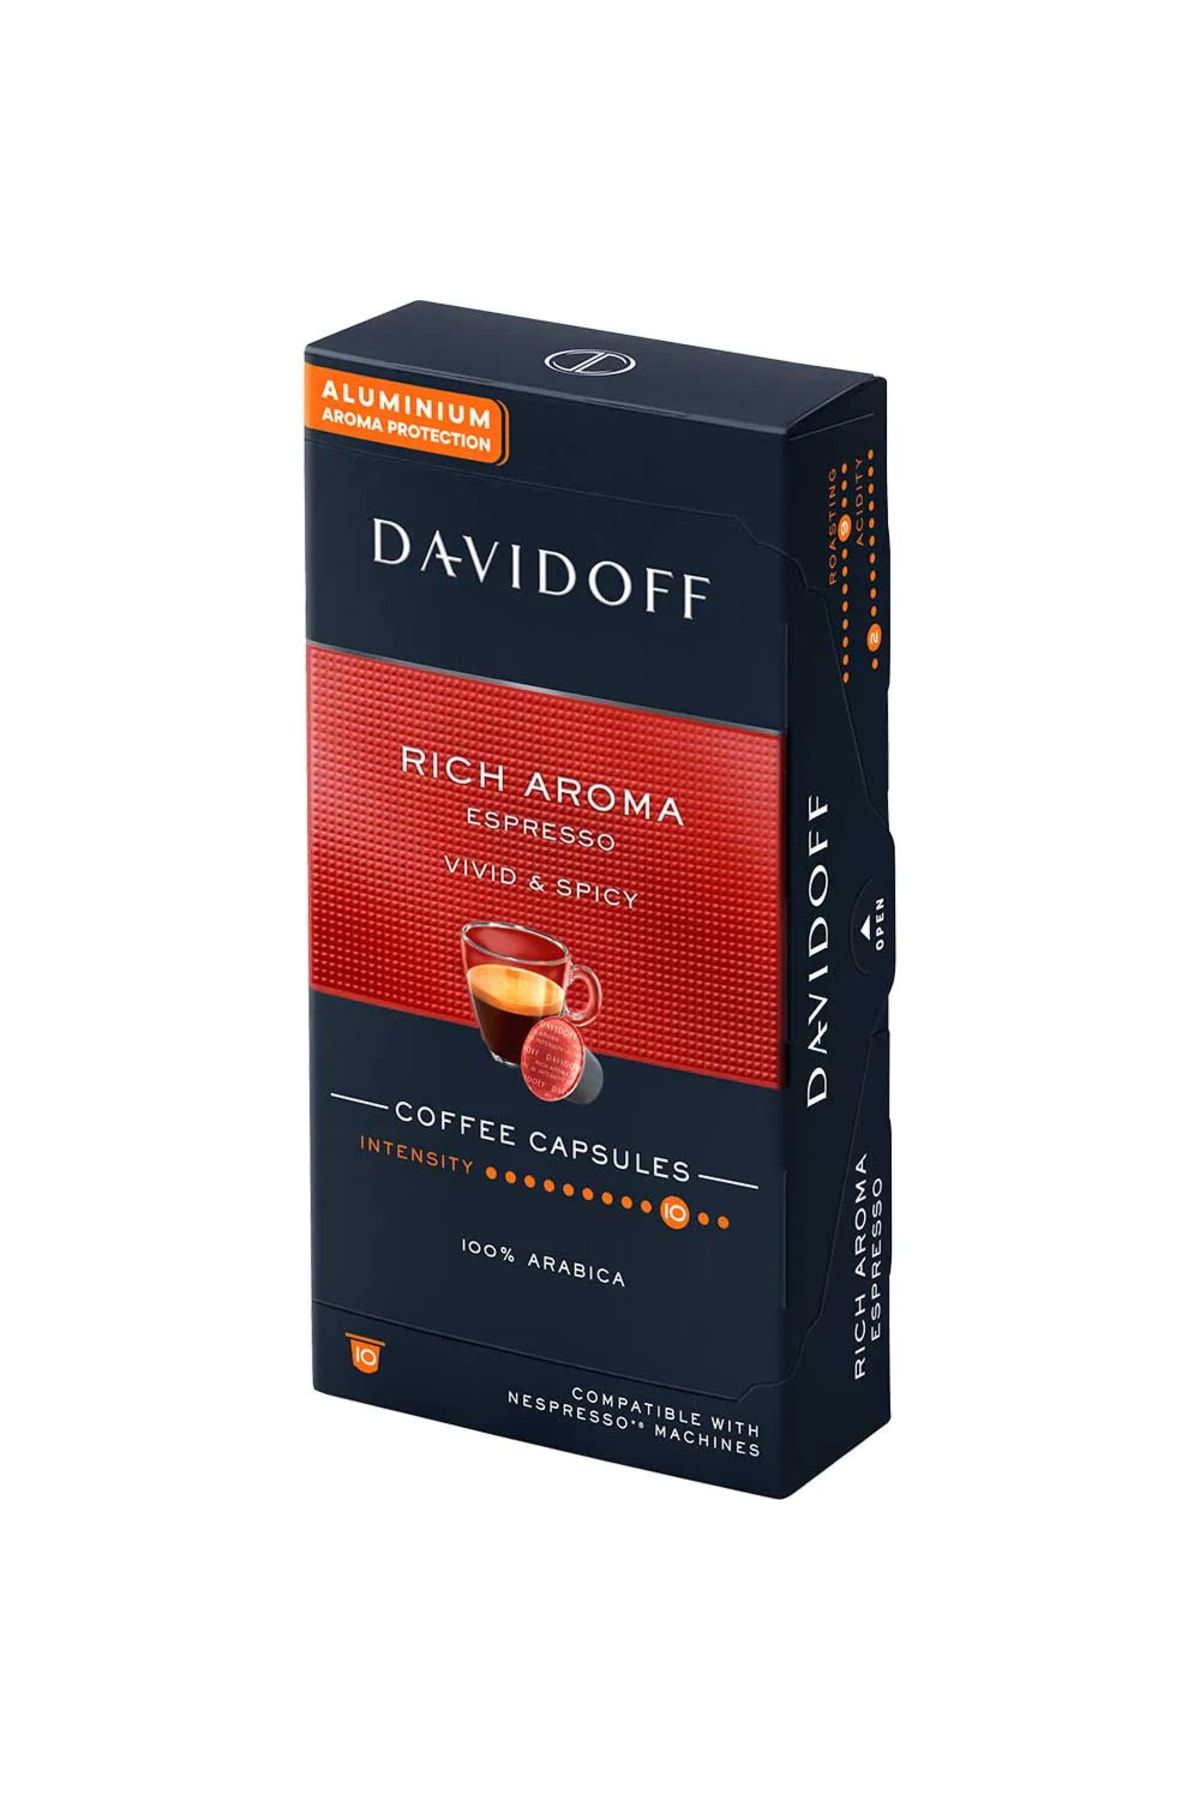 Davidoff Rıch Aroma Espresso Vıvıd & Spıcy Aluminium Kapsül Kahve 10'lu (nespresso Uyumlu)